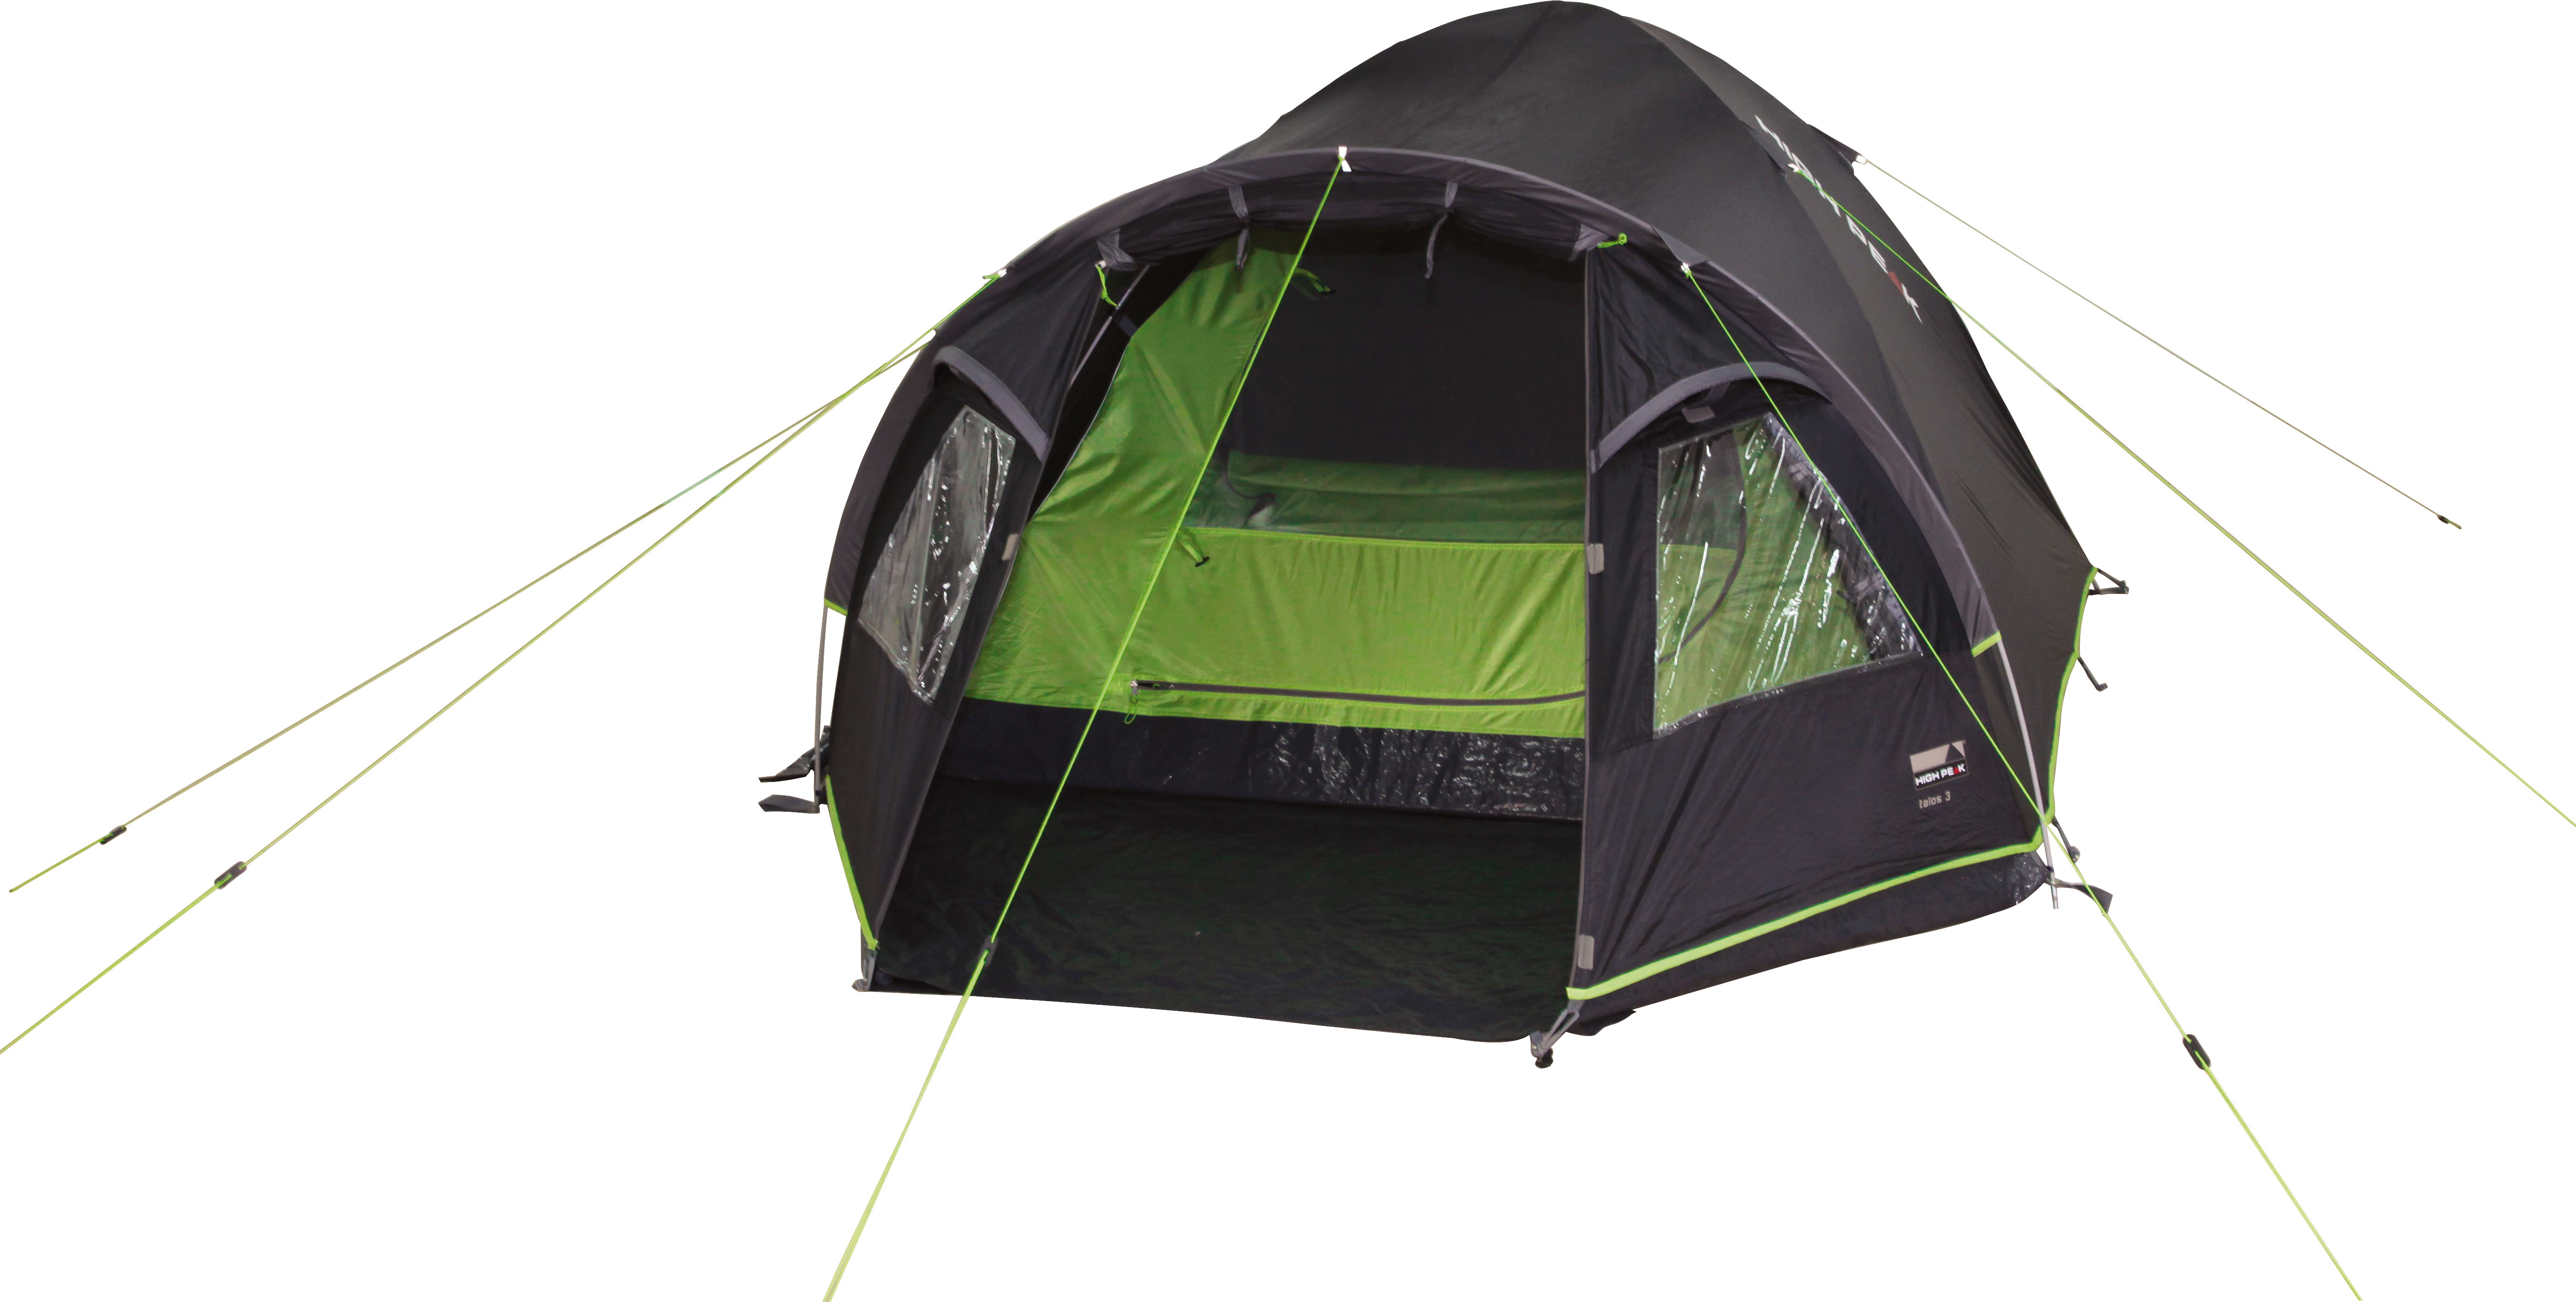 Комфортабельная четырехместная палатка с большим тамбуром High Peak Talos 4